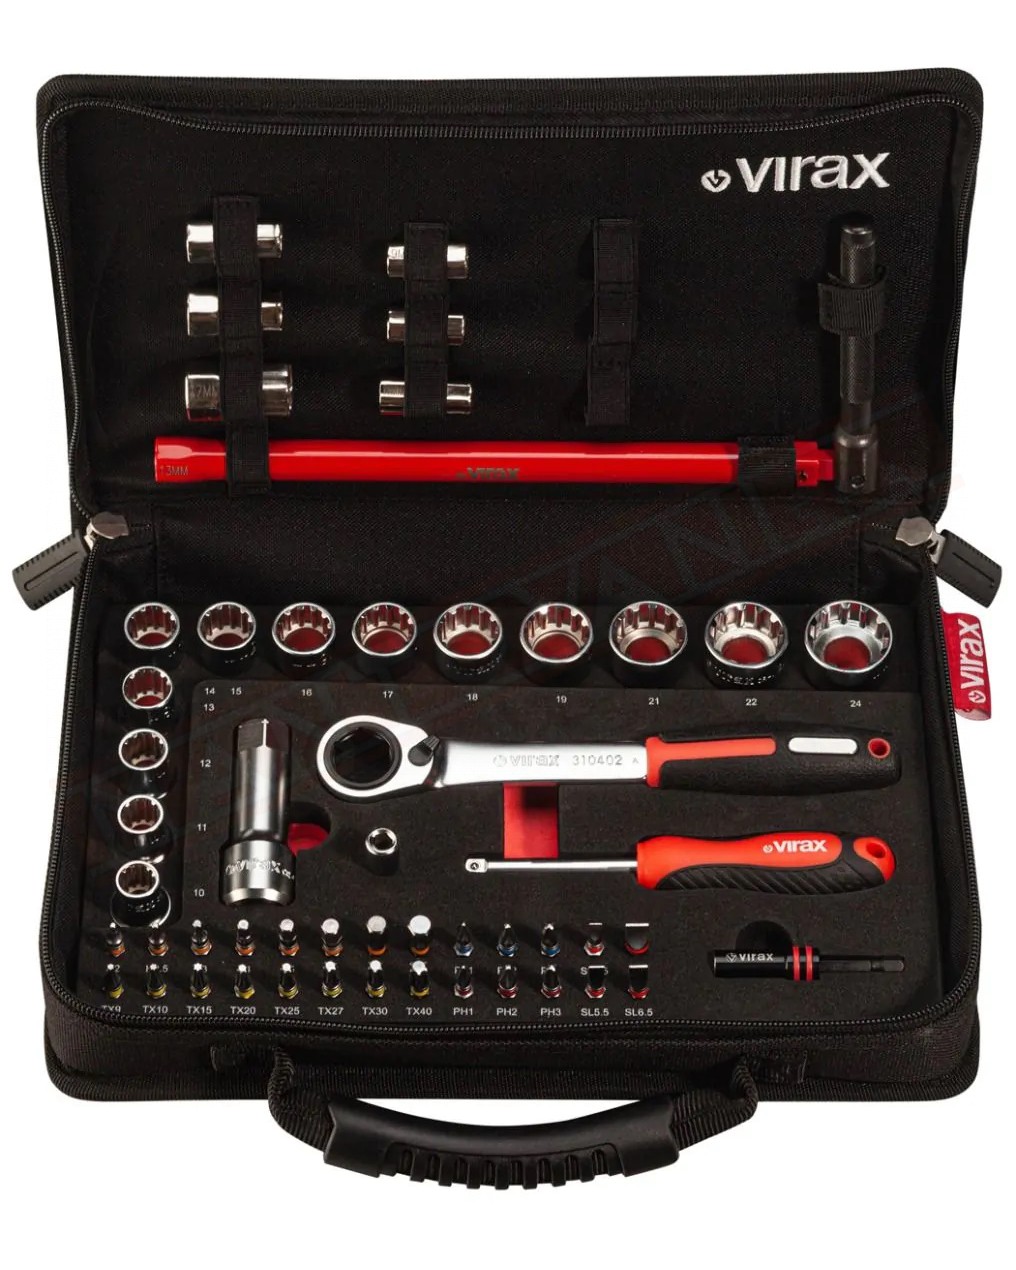 Virax valigetta plombi'box 1 chiave per rubinetti con bussole per dadi 9-10-11-12-13-14-17 cricchetto con 13 boccole 26 inserti